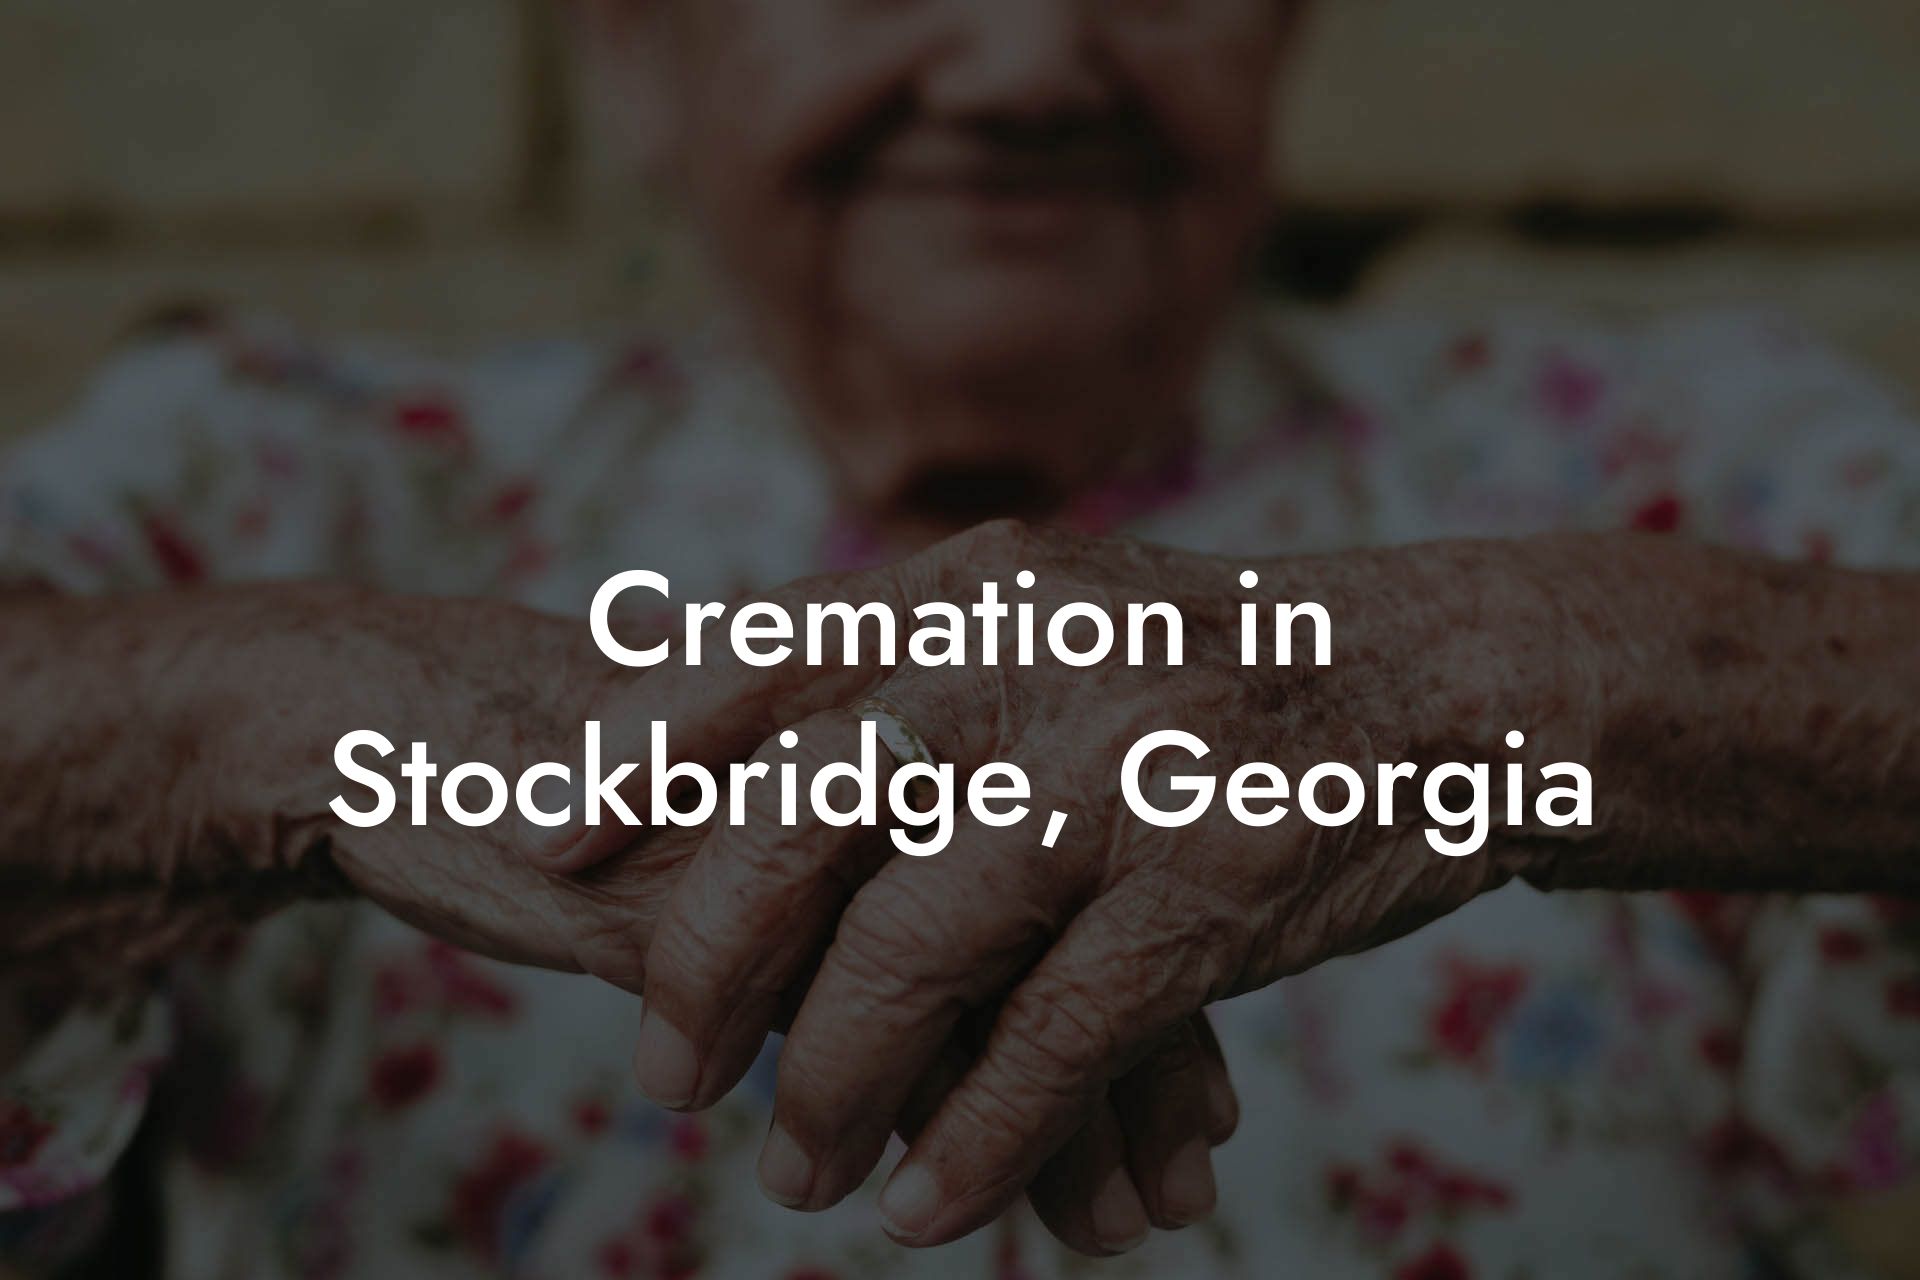 Cremation in Stockbridge, Georgia